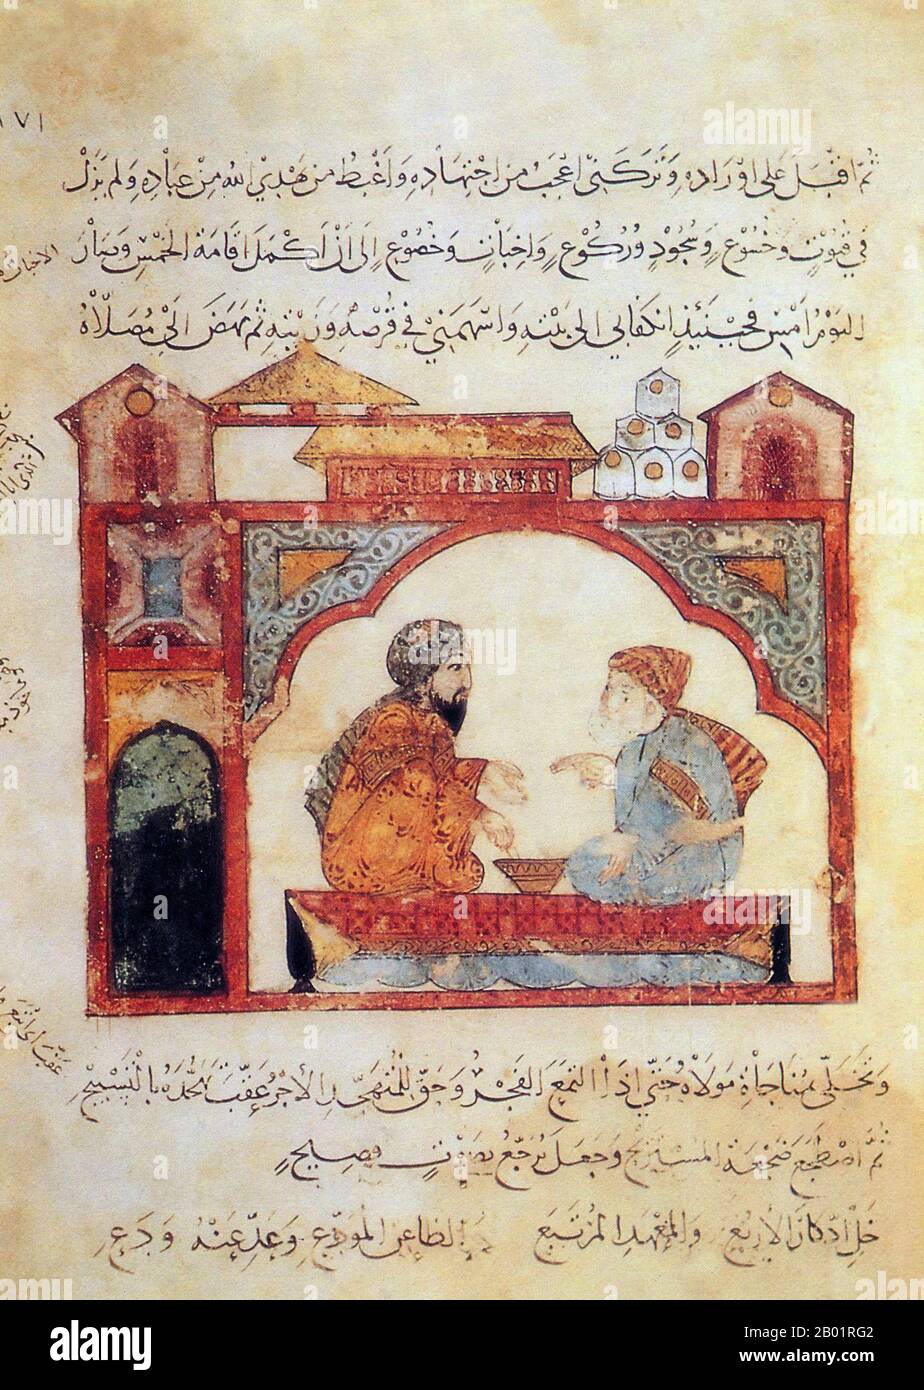 Iraq: Due uomini in discussione. Pittura in miniatura di Yahya ibn Mahmud al-Wasiti, 1237 d.C. Yahyâ ibn Mahmûd al-Wâsitî è stato un artista arabo islamico del XIII secolo. Al-Wasiti è nato a Wasit, nel sud dell'Iraq. Era noto per le sue illustrazioni del Maqam di al-Hariri. I Maqāma (letteralmente "assemblee") sono un genere letterario arabo (originariamente) di prosa rimata con intervalli di poesia in cui la stravaganza retorica è evidente. Si dice che l'autore del X secolo Badī' al-Zaman al-Hamadhāni abbia inventato la forma, che fu estesa da al-Hariri di Bassora nel secolo successivo. Foto Stock